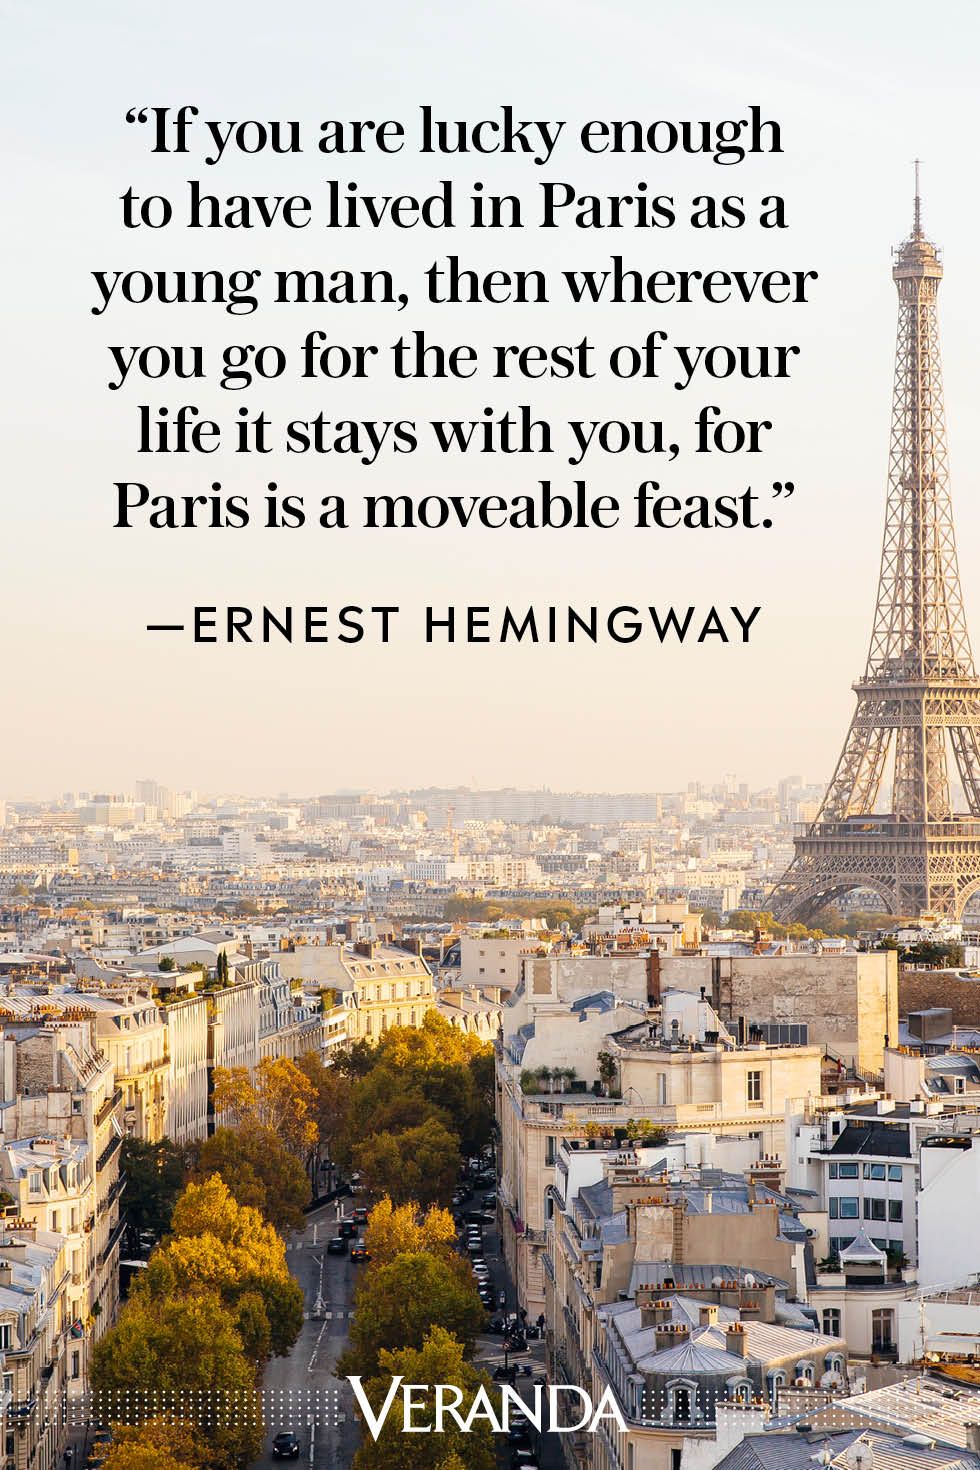 Veranda Quotes about Paris Ernest Hemingway